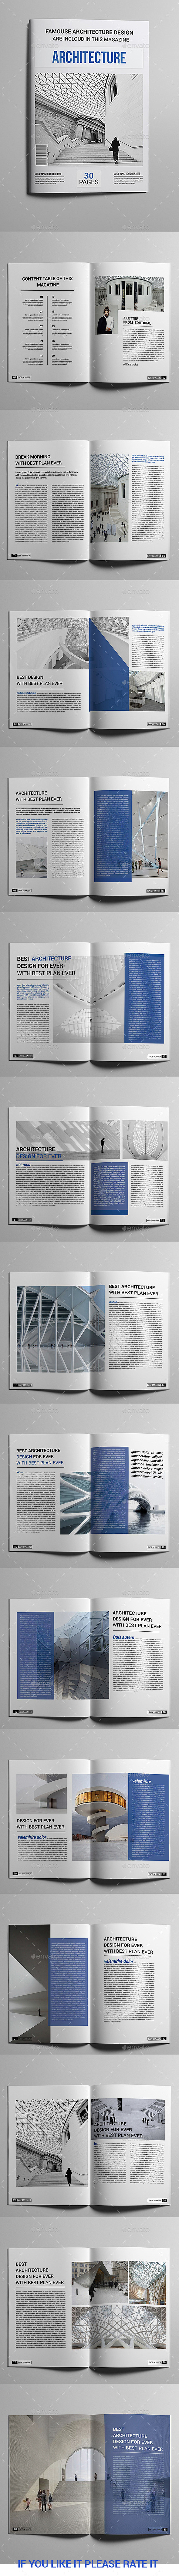 Architecture Magazin...